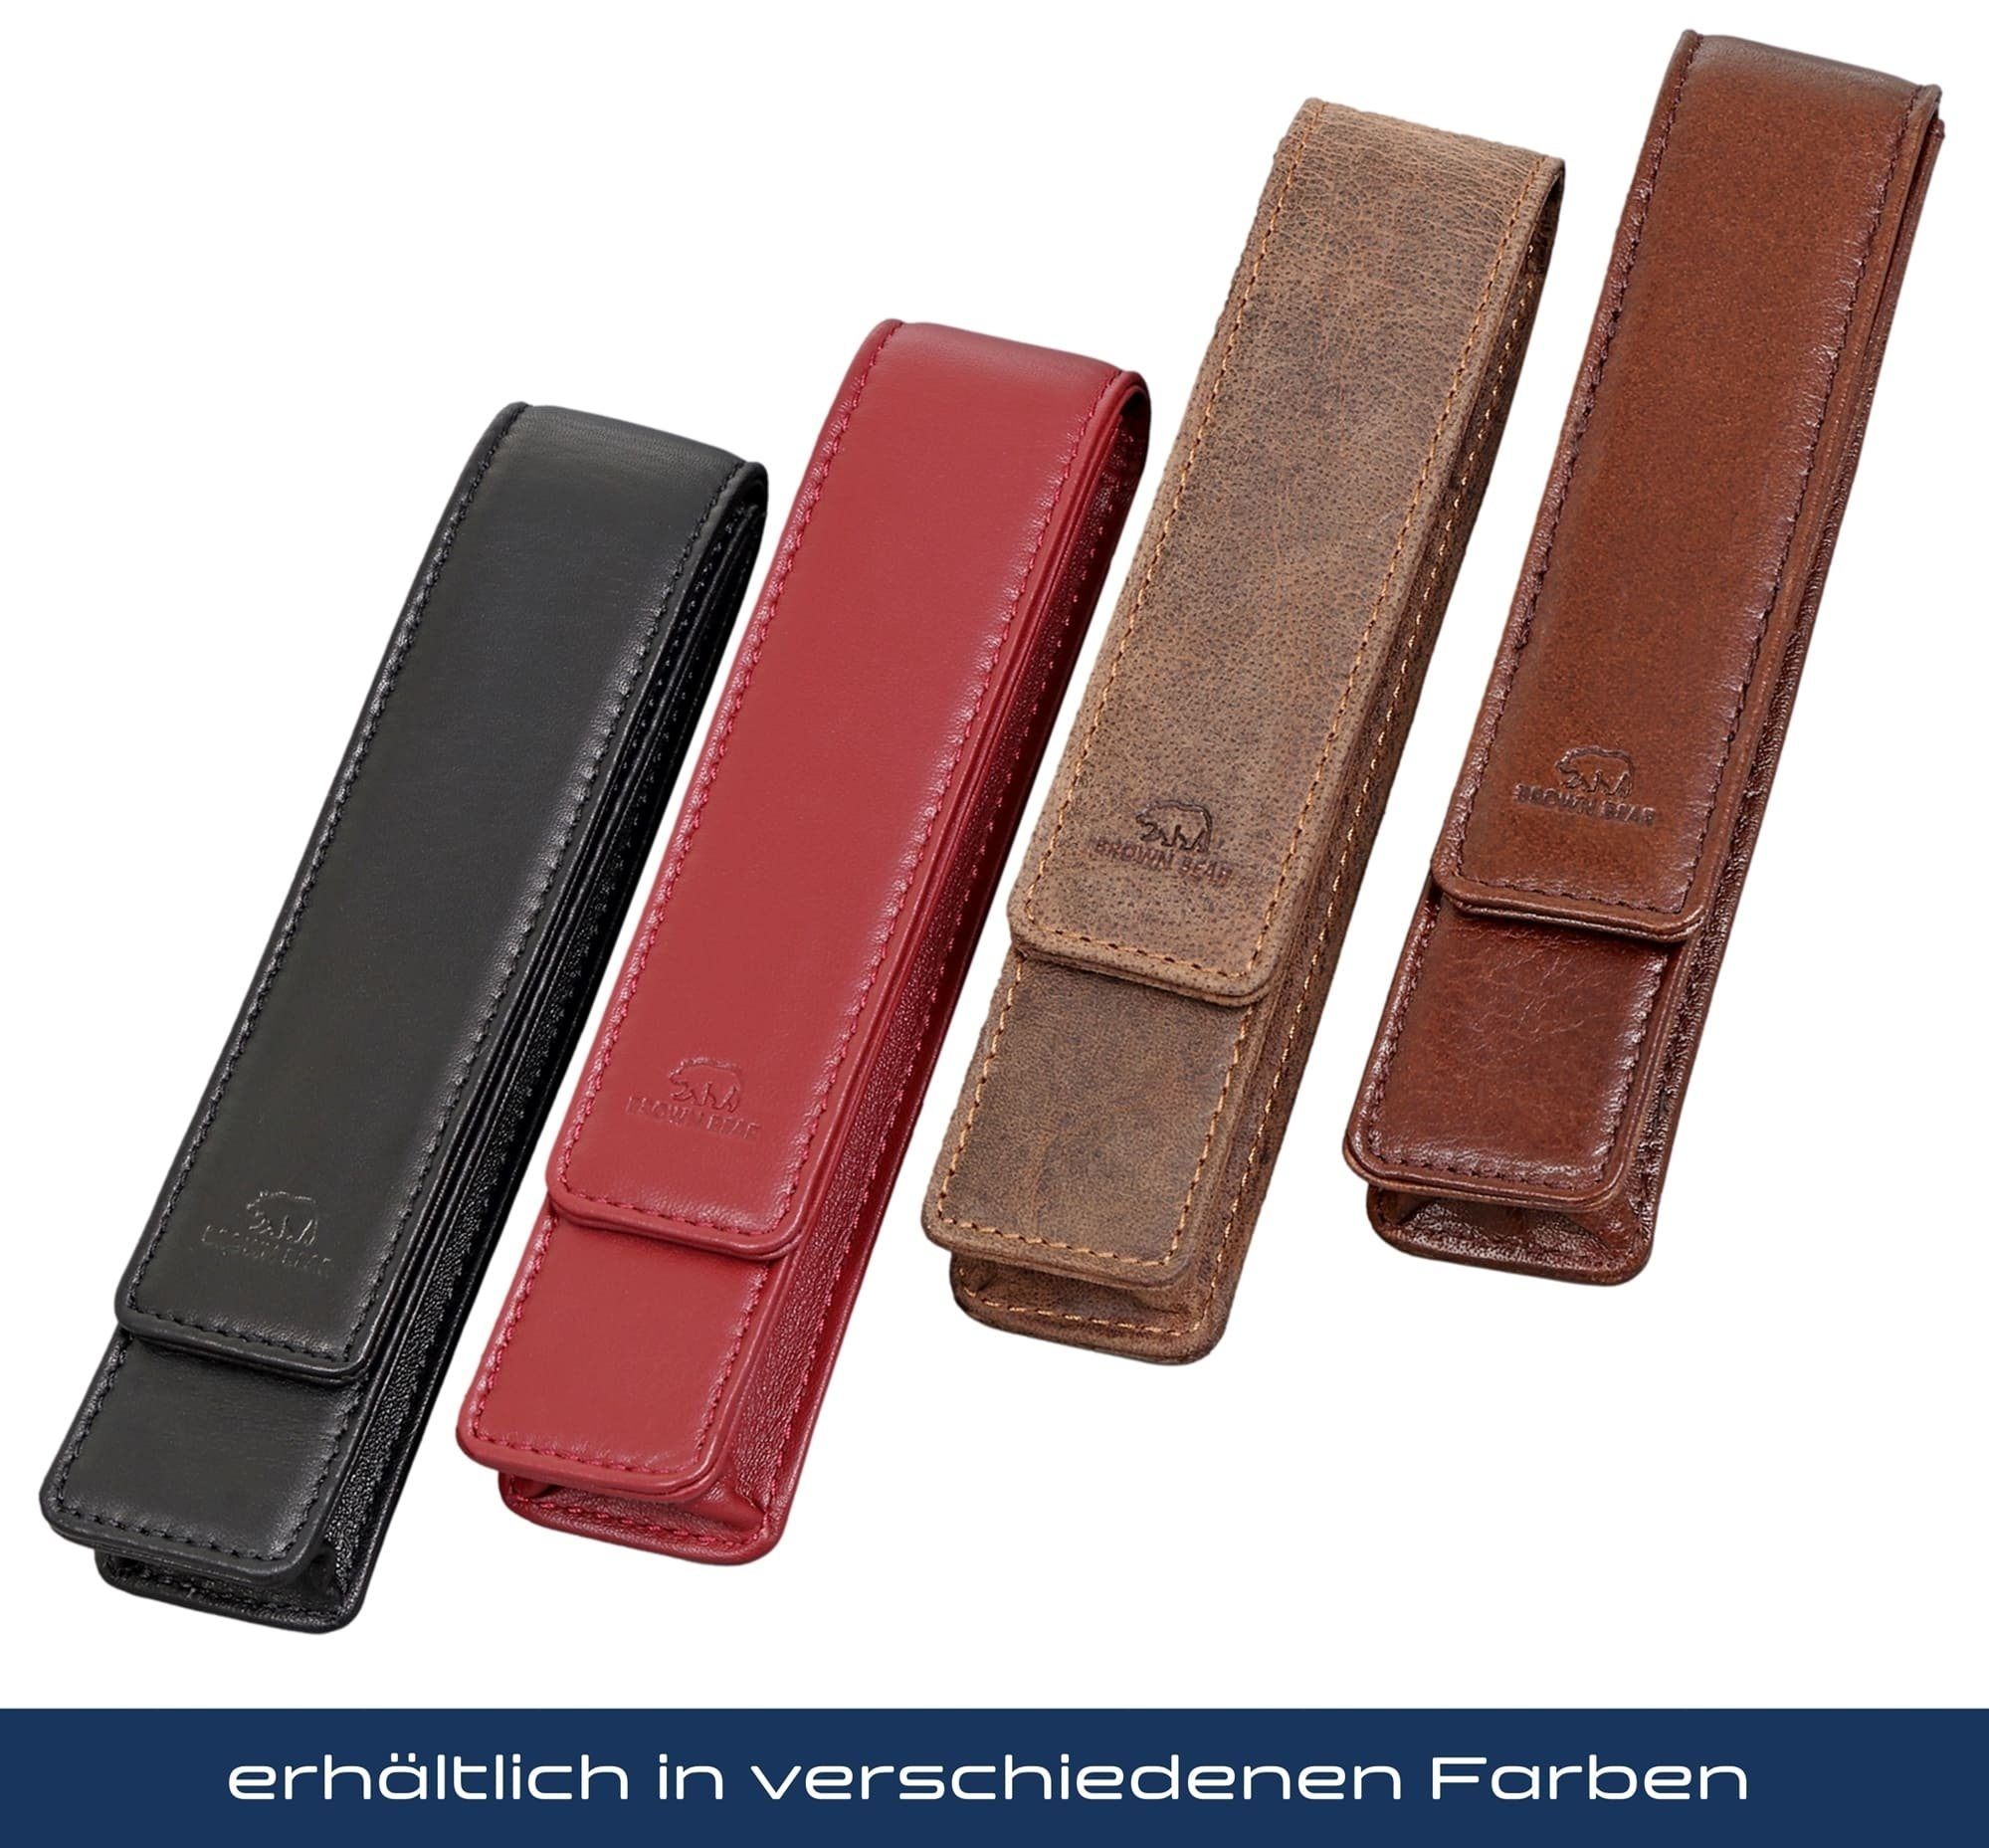 Brown Bear Fülleretui Damen - für Echtleder Magnetverschluss mit 01 Schreibgeräteetui Rot Stift, einen Golf für aus